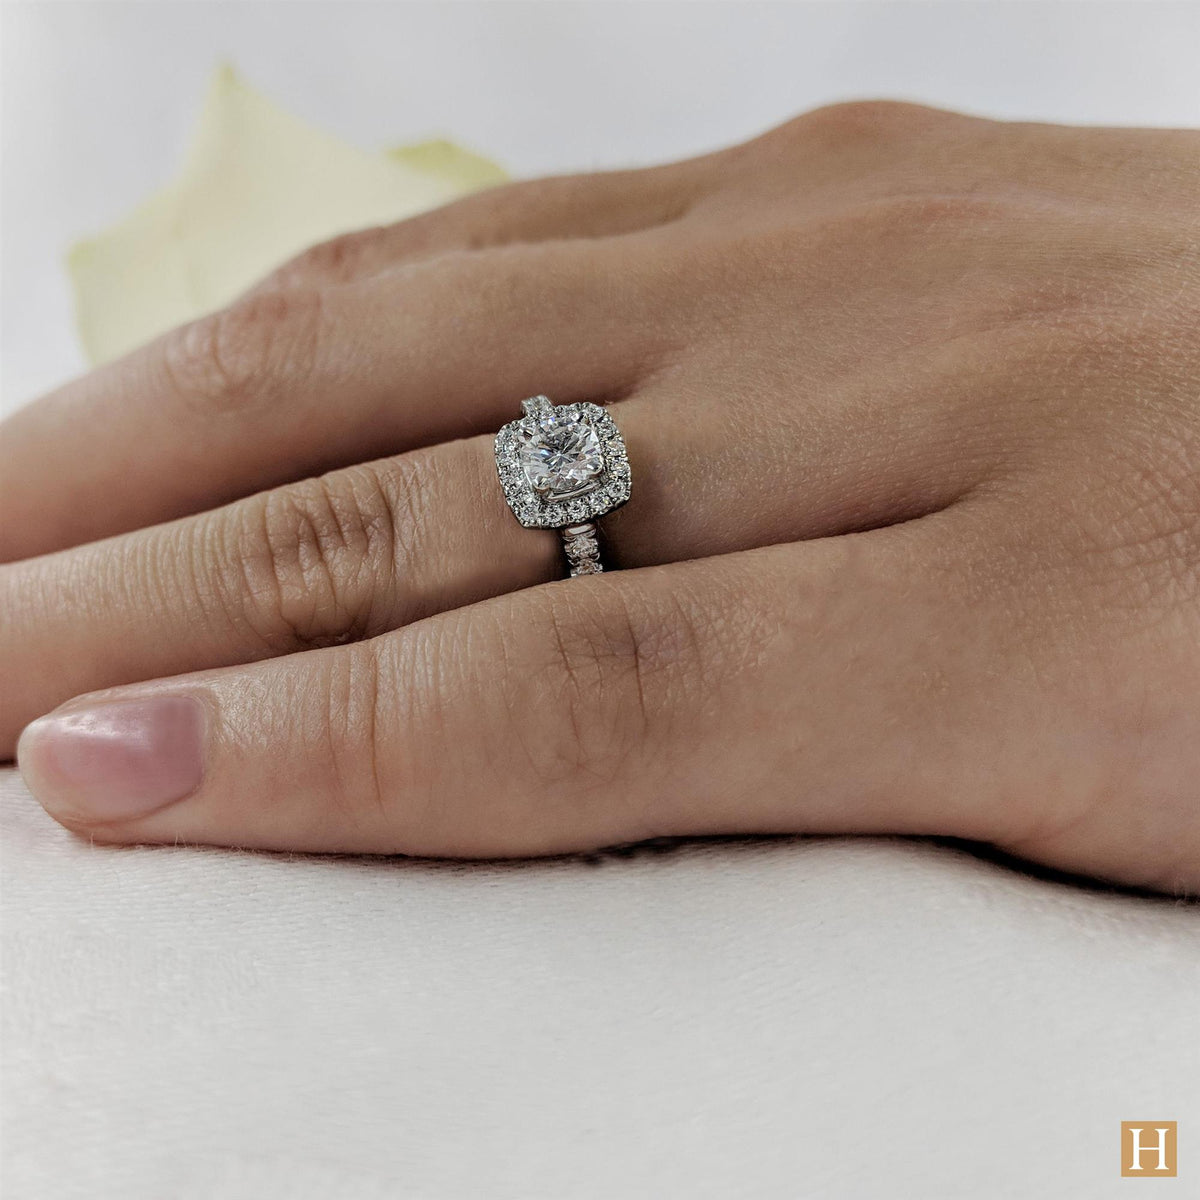 Platinum Inisheer Brava Engagement Ring